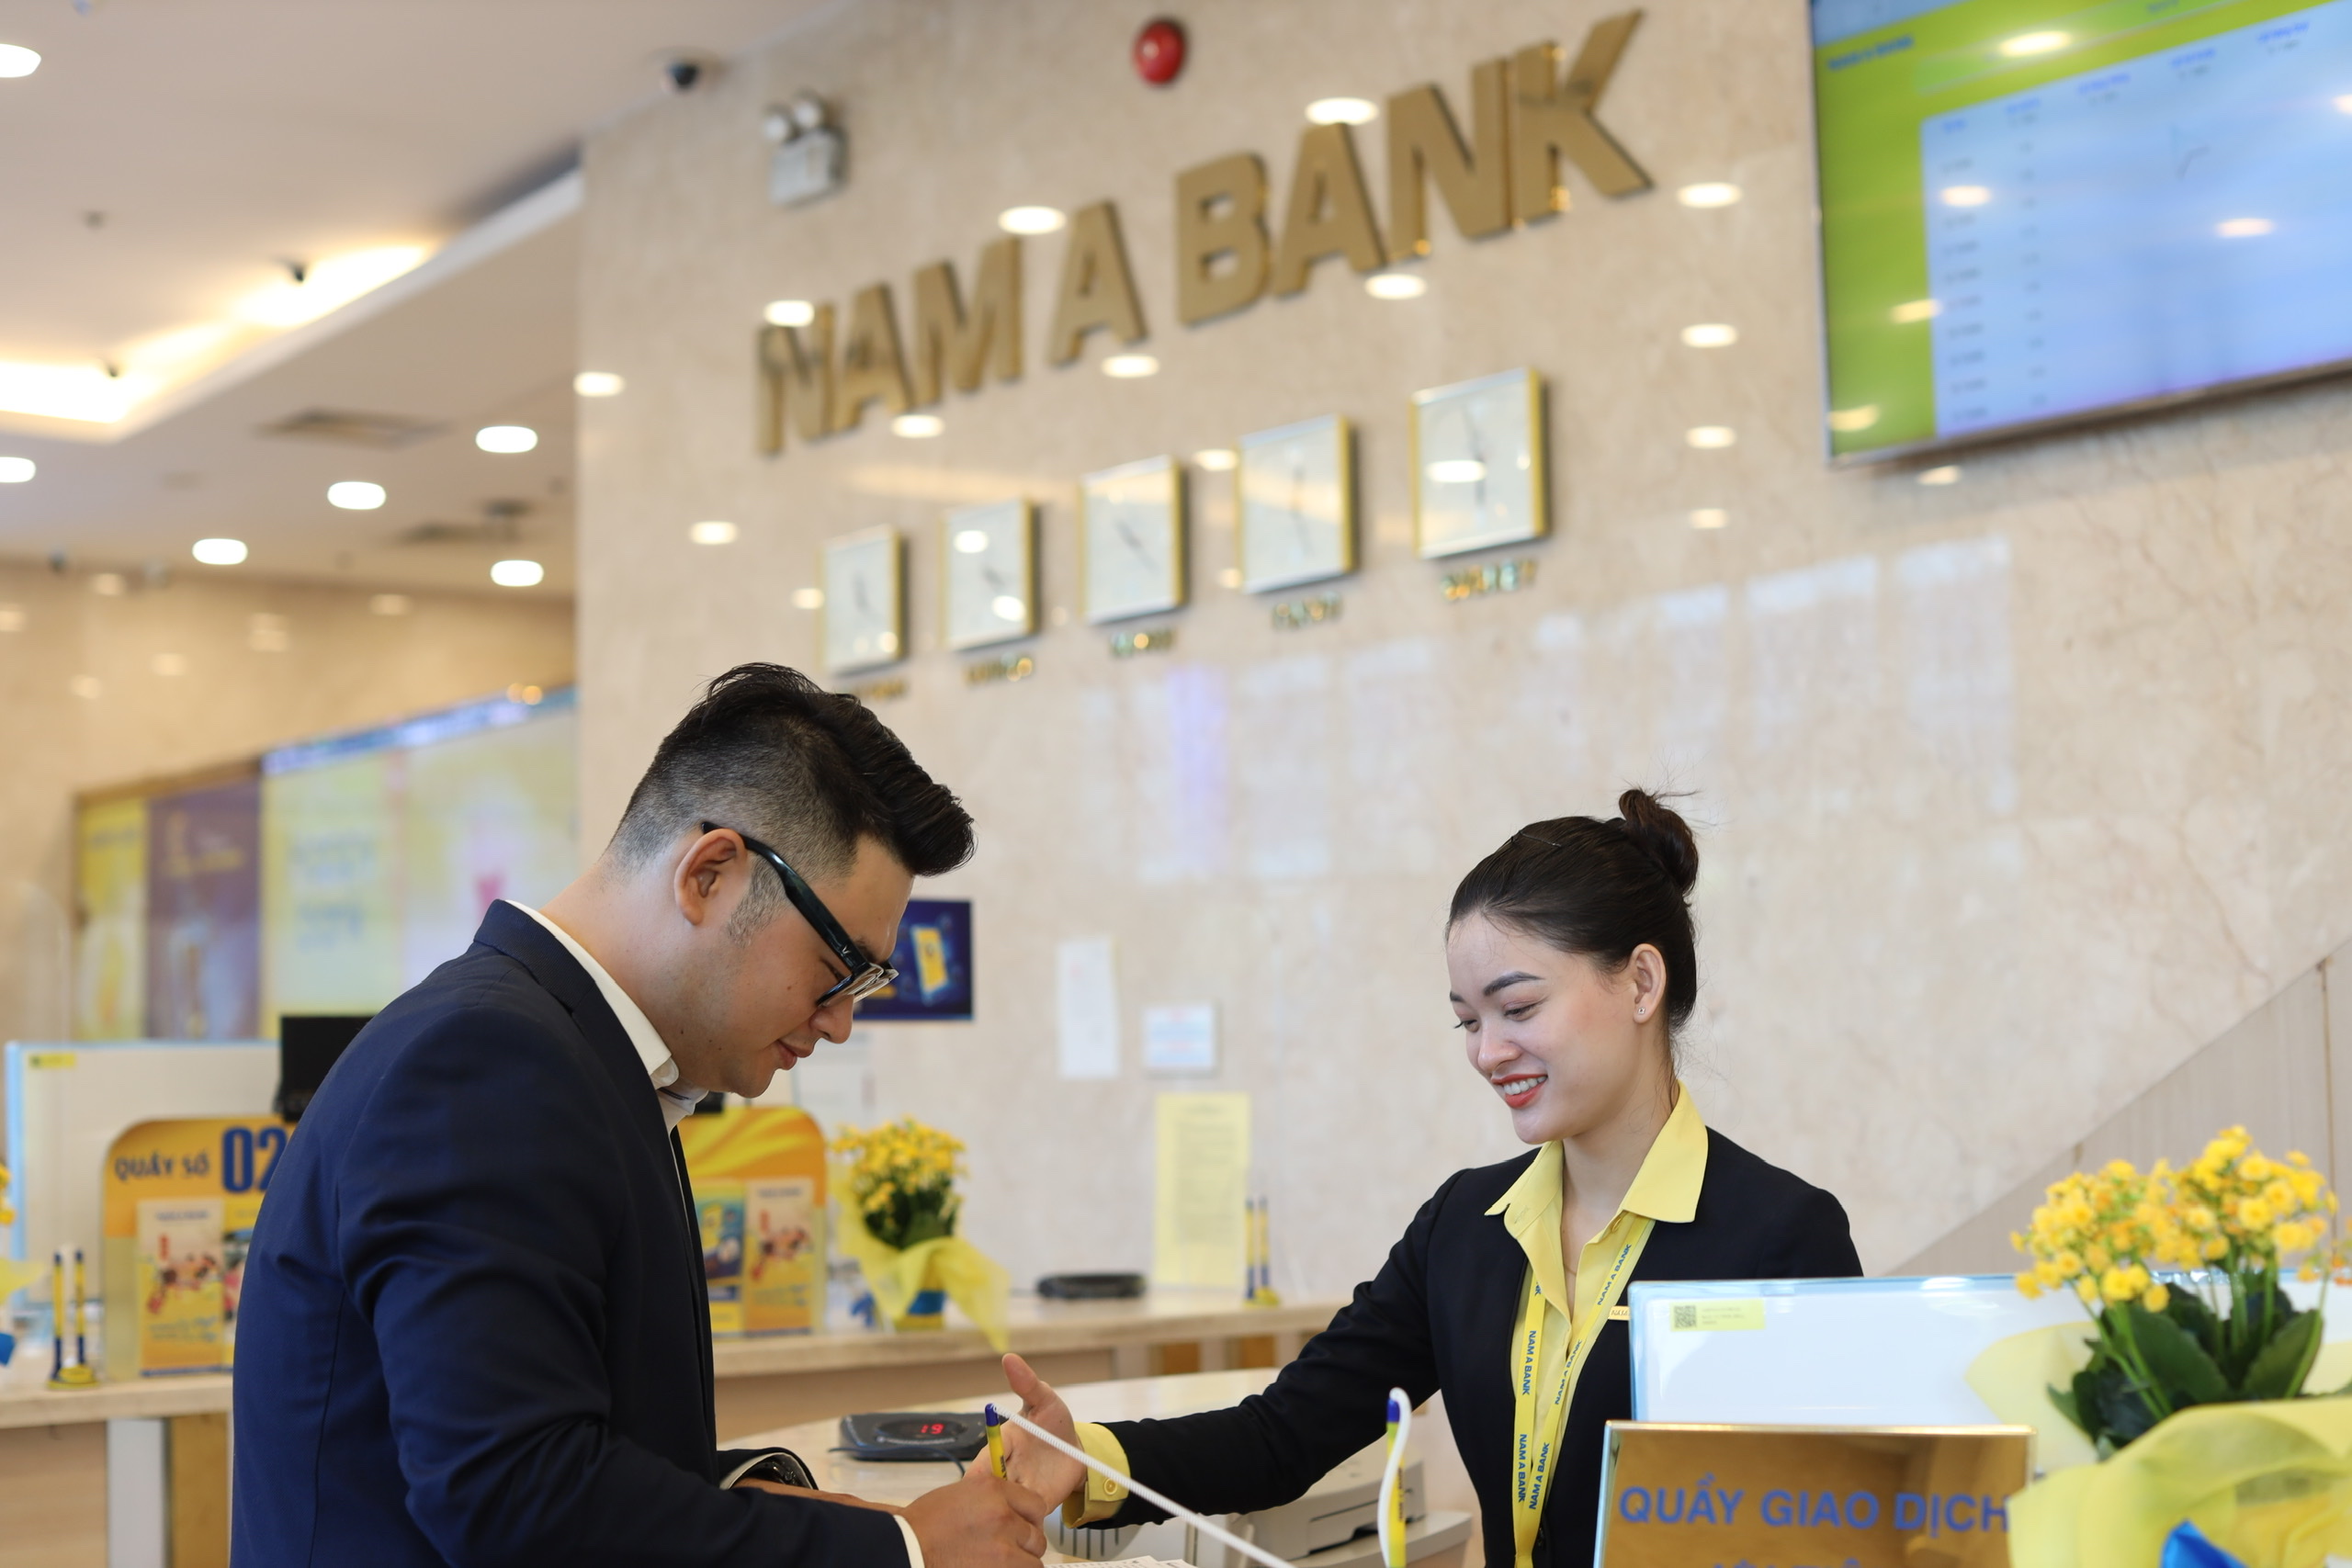 Nam A Bank - Chất lượng thanh toán quốc tế xuất sắc 5 năm liên tiếp